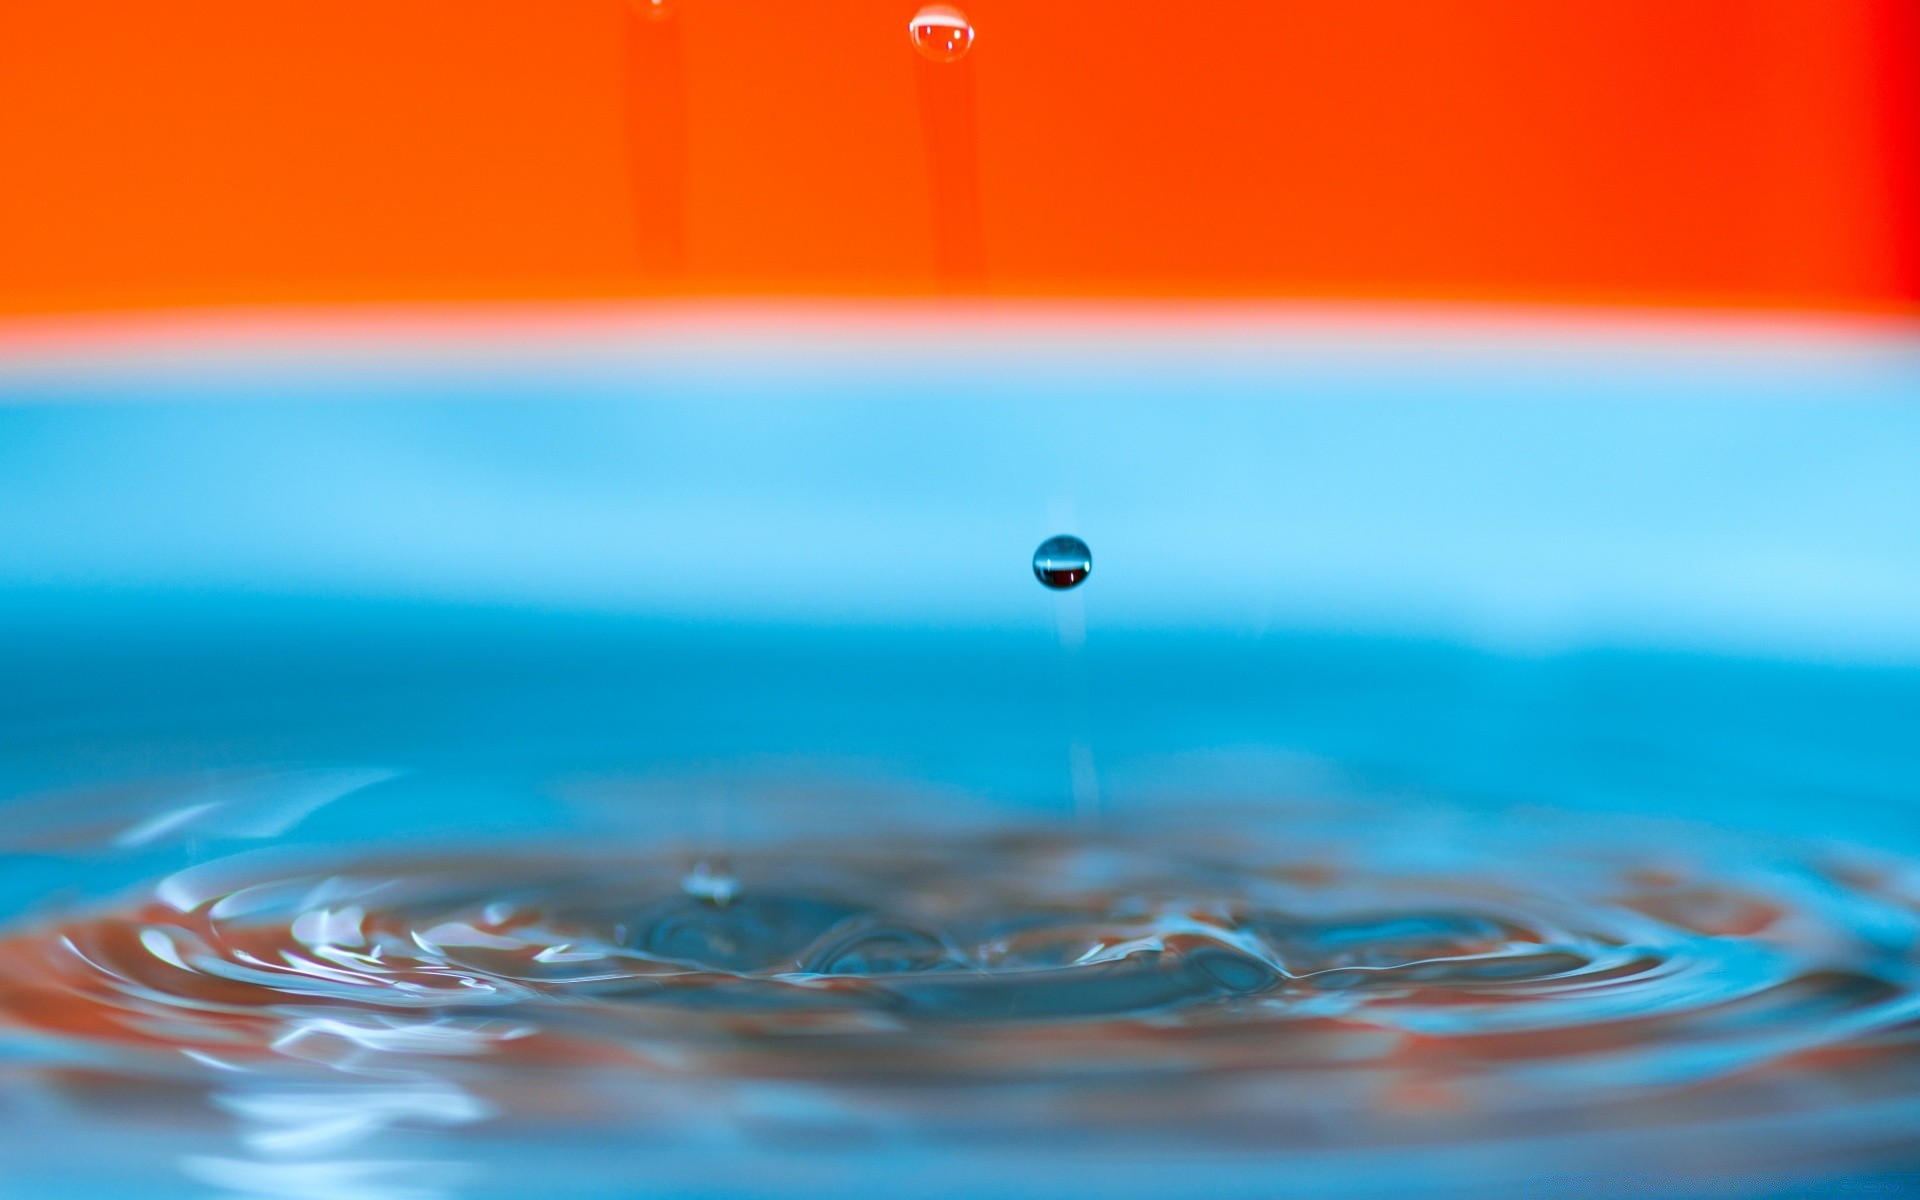 капельки и вода воды жидкость волна аннотация цвет мокрый дождь падение размытость бирюза пульсация всплеск рабочего стола отражение яркий